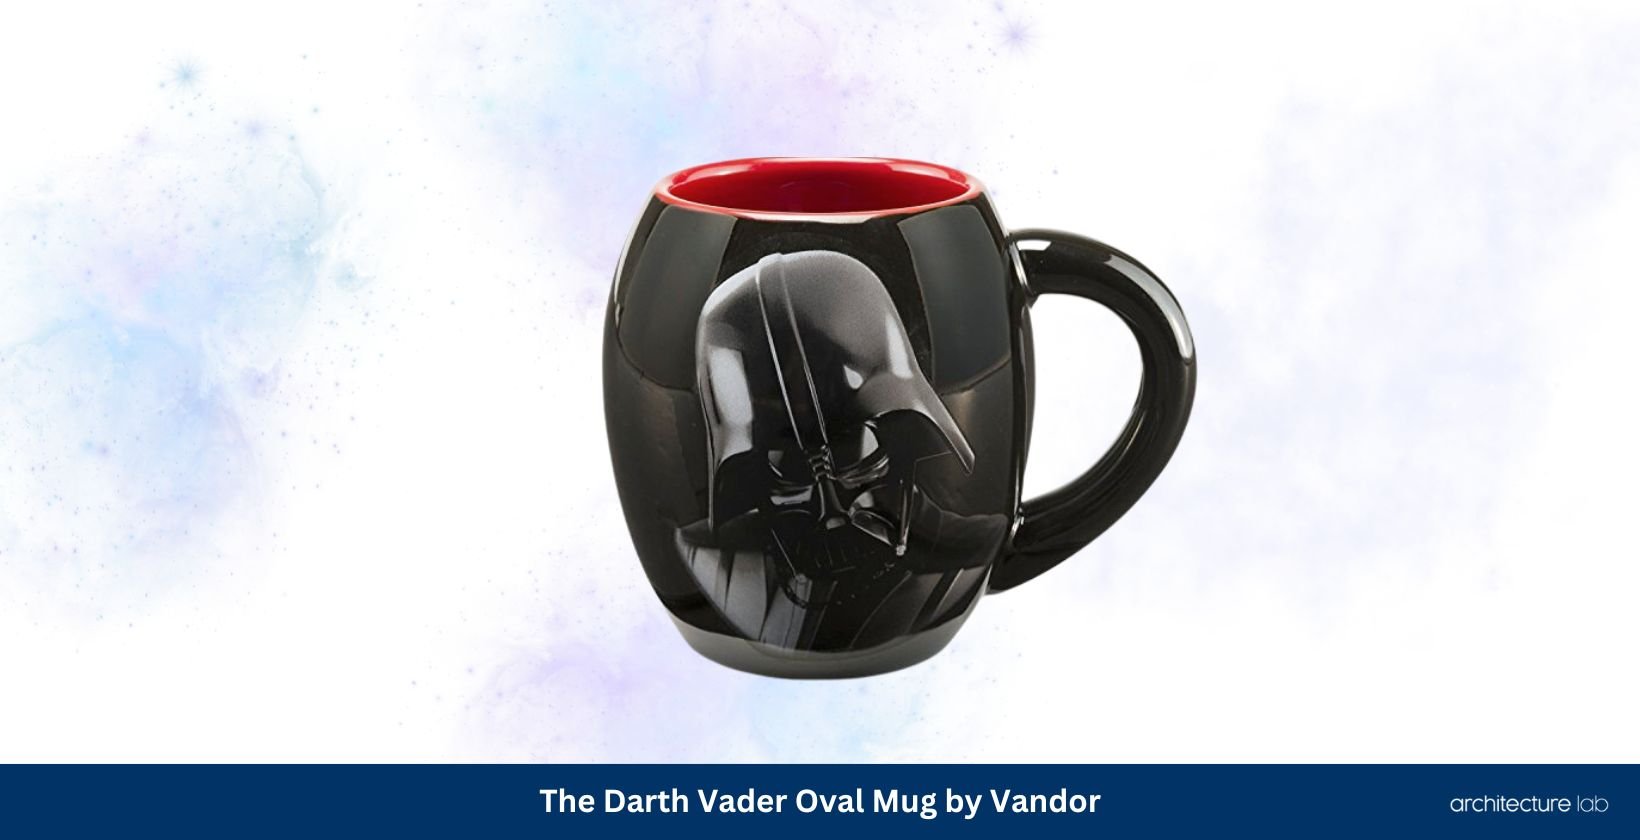 Understated elegance – the darth vader oval mug by vandor